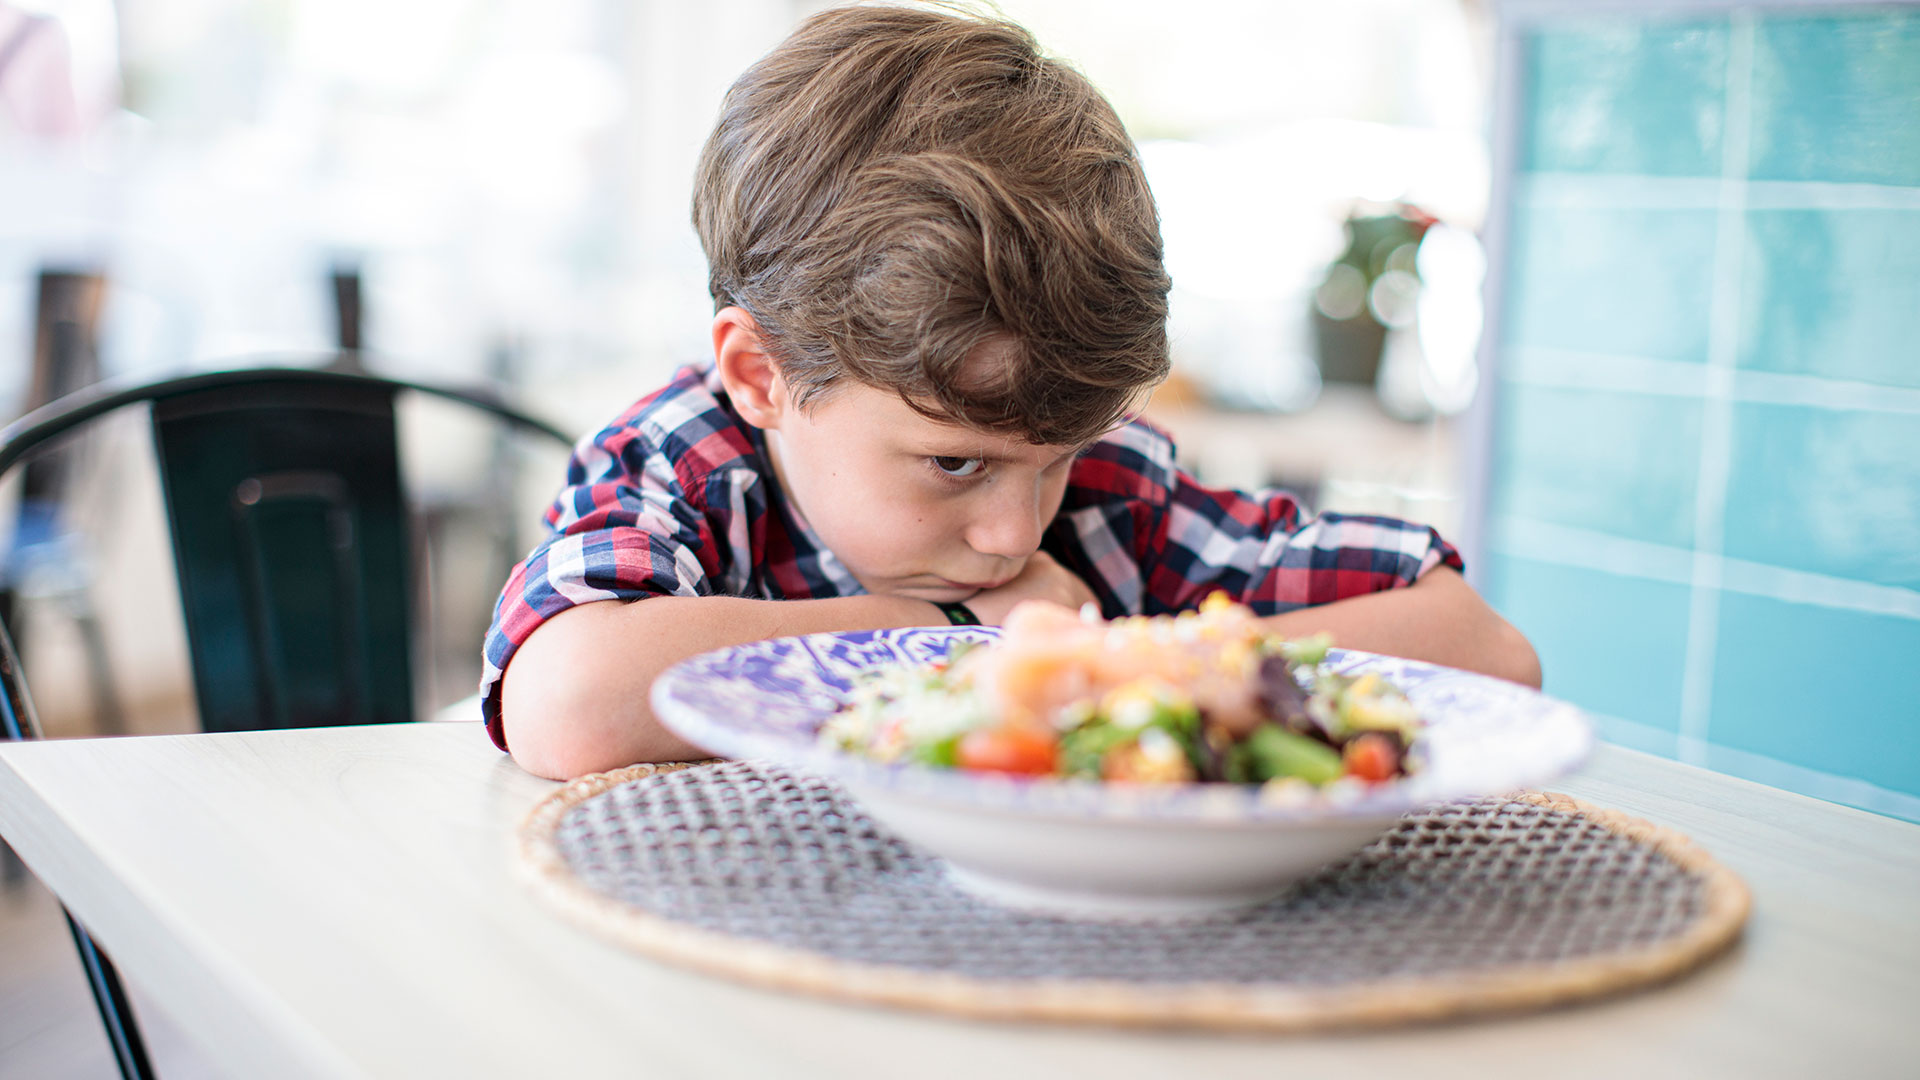 Lo que muchos padres perciben como comportamiento caprichoso cuando su hijo se niega a comer algo en realidad podría evidenciar la distorsión olfativa asociada al coronavirus conocida como parosmia (Getty Images)